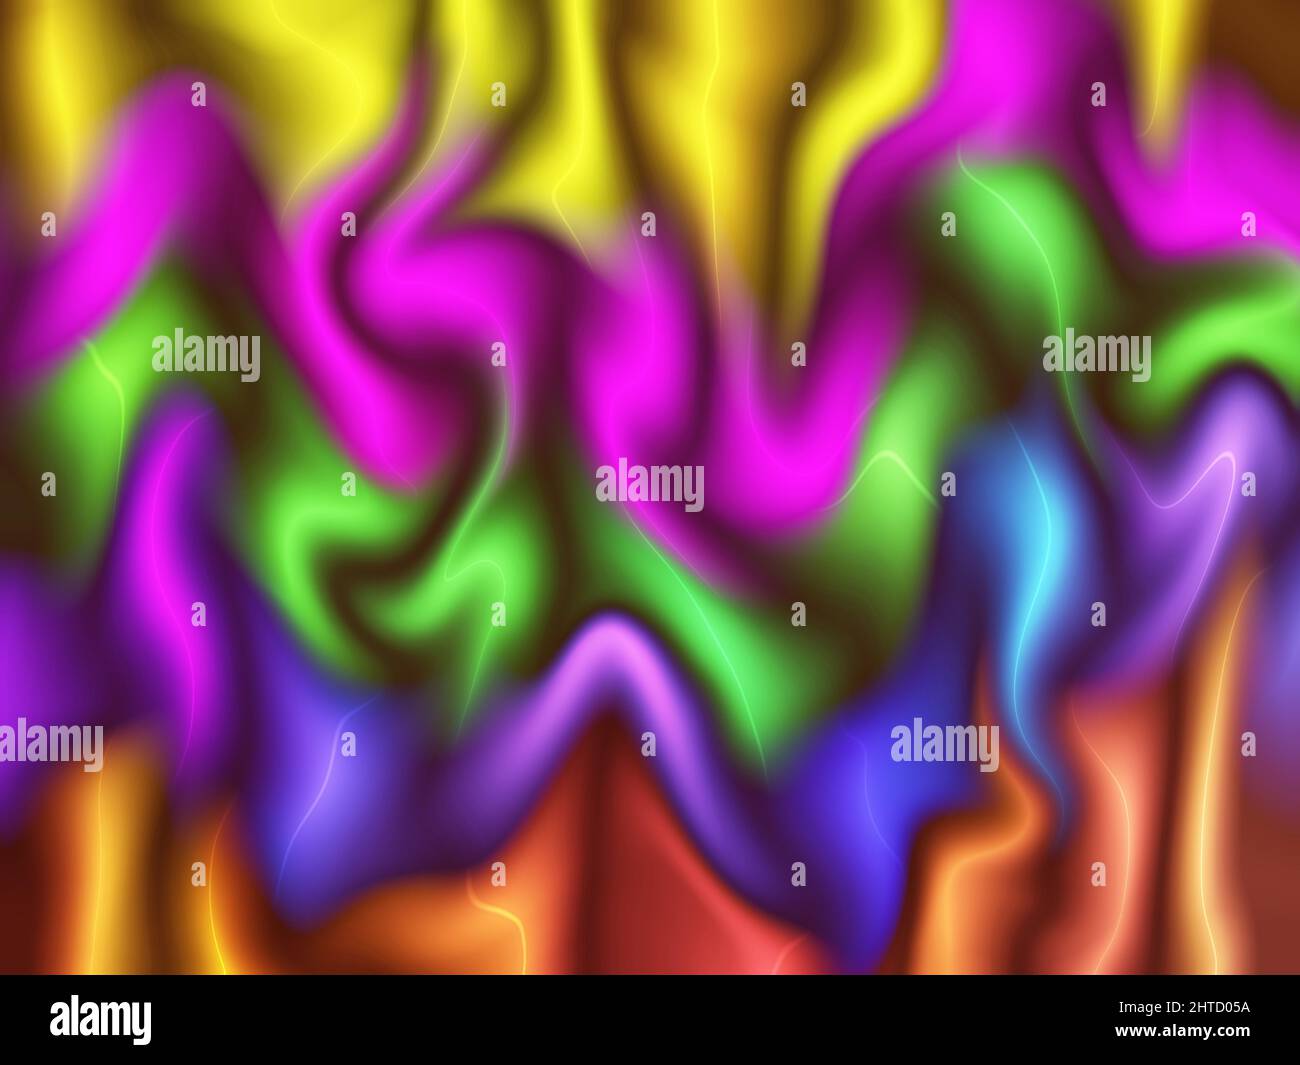 Abstarct, colorato, vorticoso e luminoso neon fumo sfondo testurizzato. Illustrazione di alta qualità Foto Stock